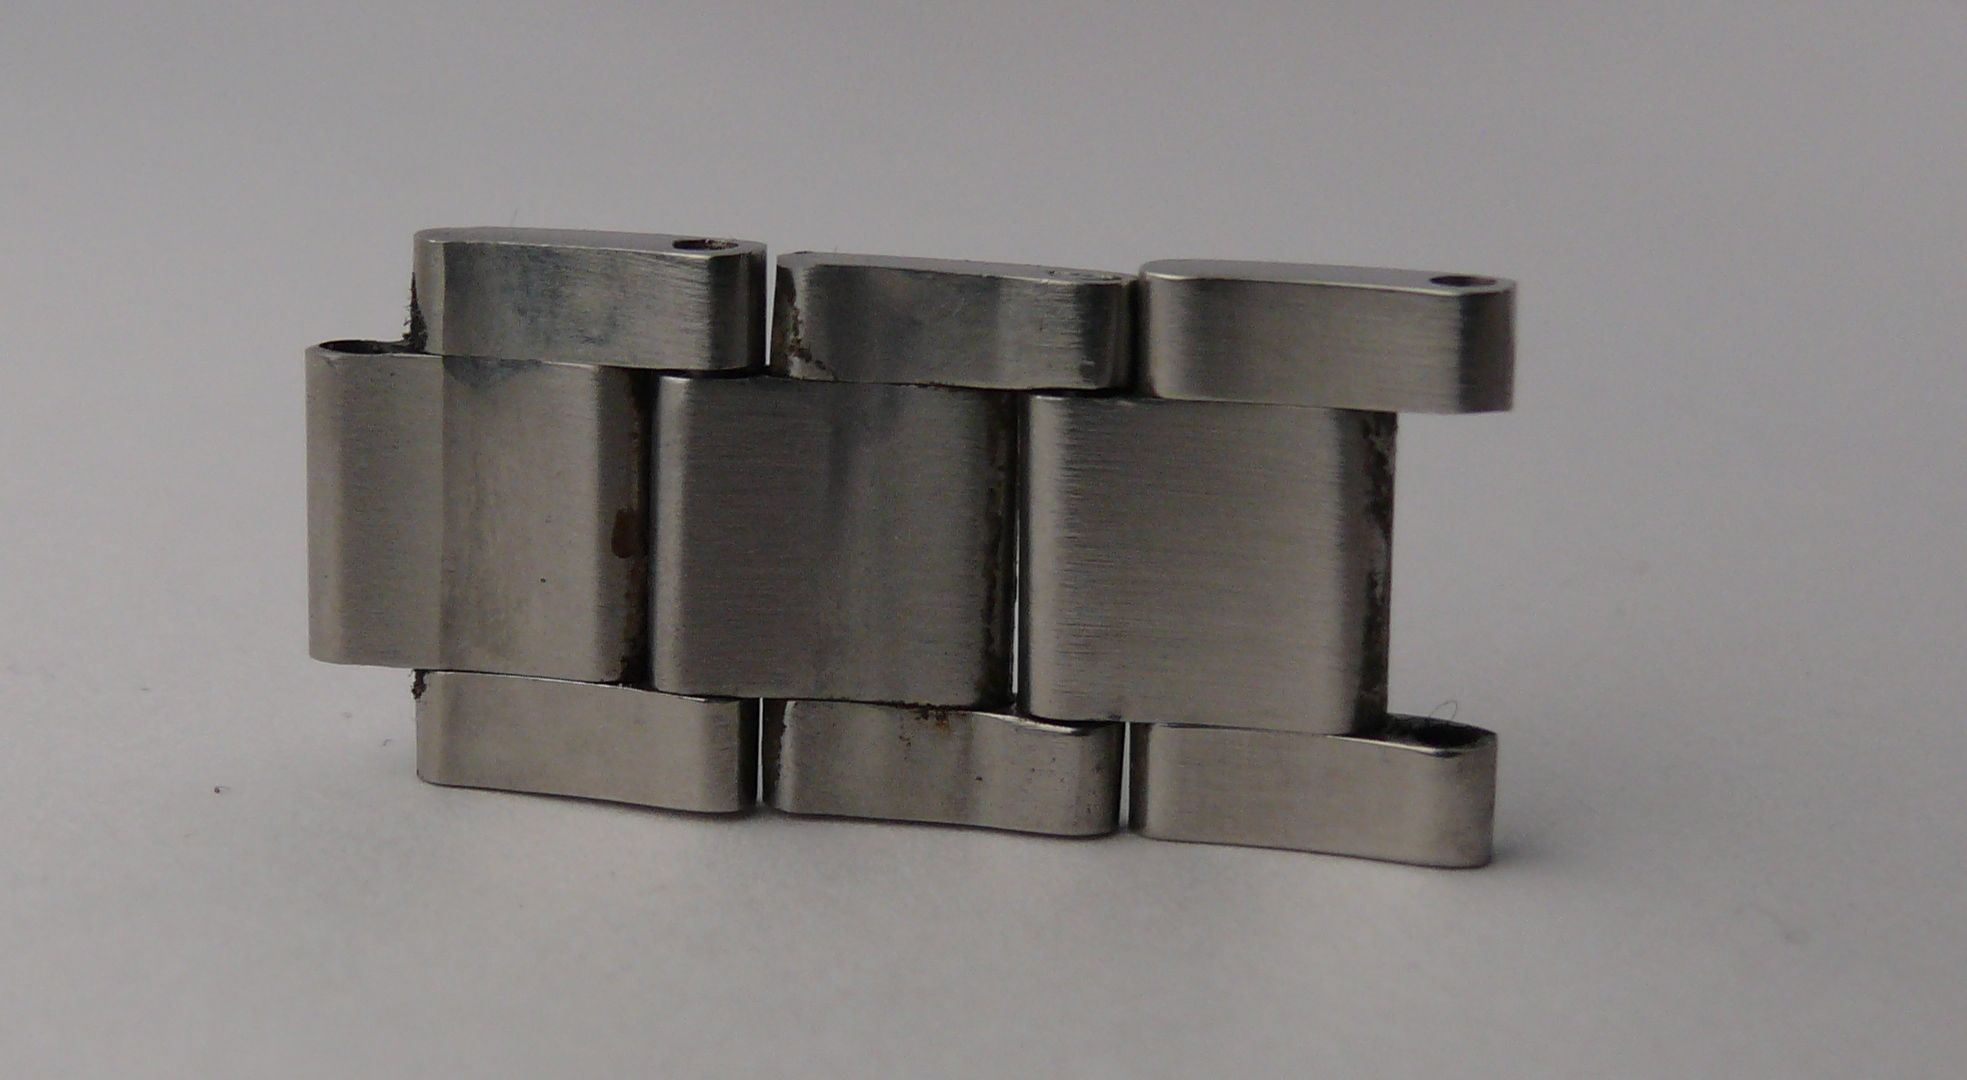 Section of 3 links for Vintage Rolex 20mm 93150 78360 Bracelet links Parts for ref’s 5512 5513 - Image 4 of 4